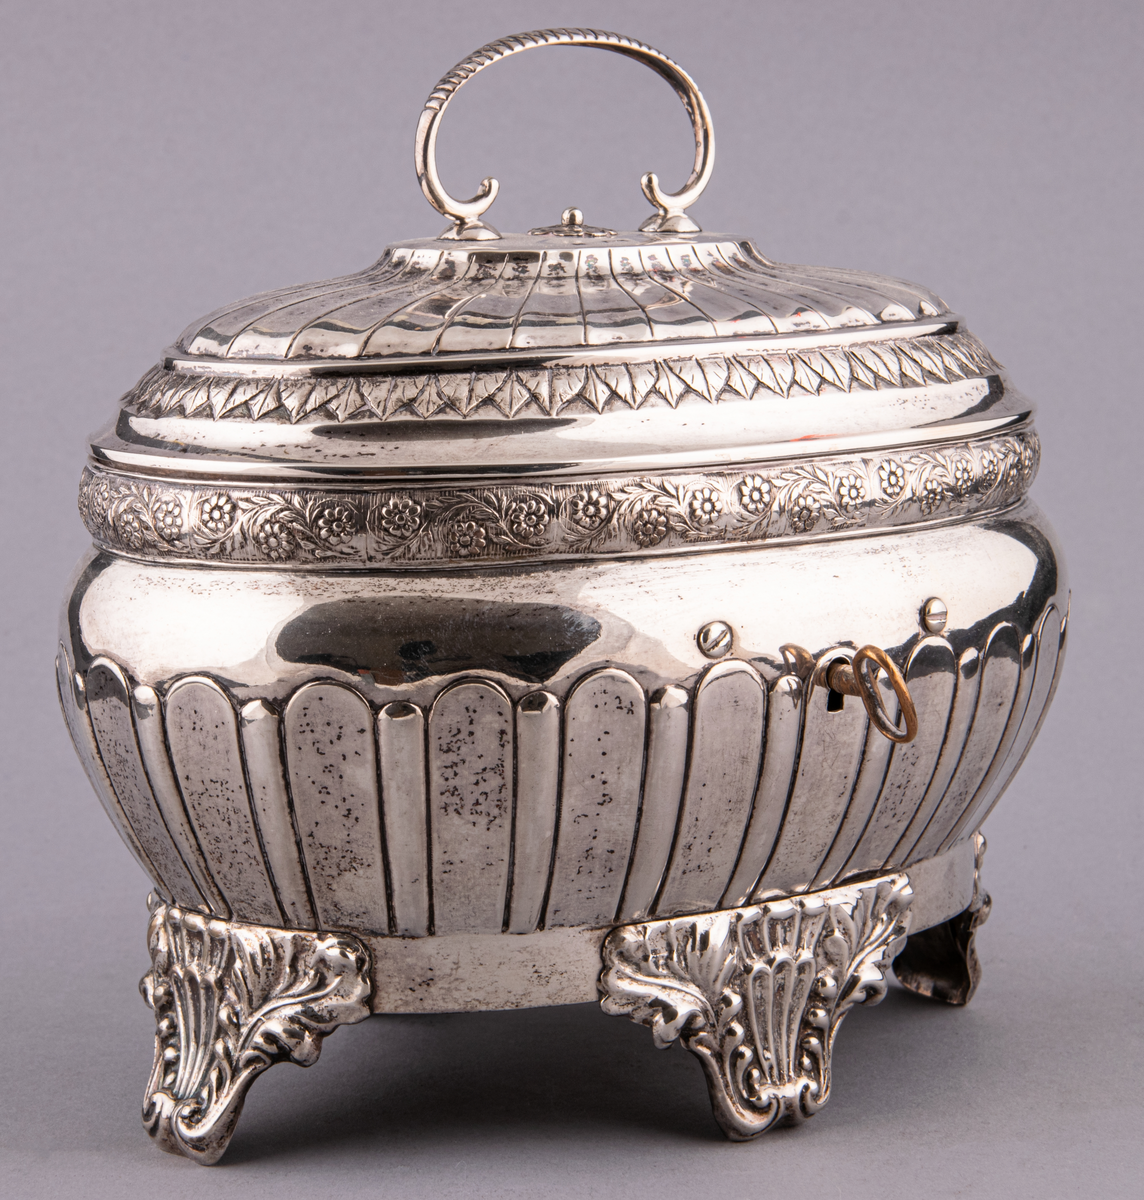 Sockerskrin i silver, tillverkat av Jakob Richard Borg, Gävle.
Inskription: Minne av E och W. R. till P och M. Roman. den 26/6 1848.